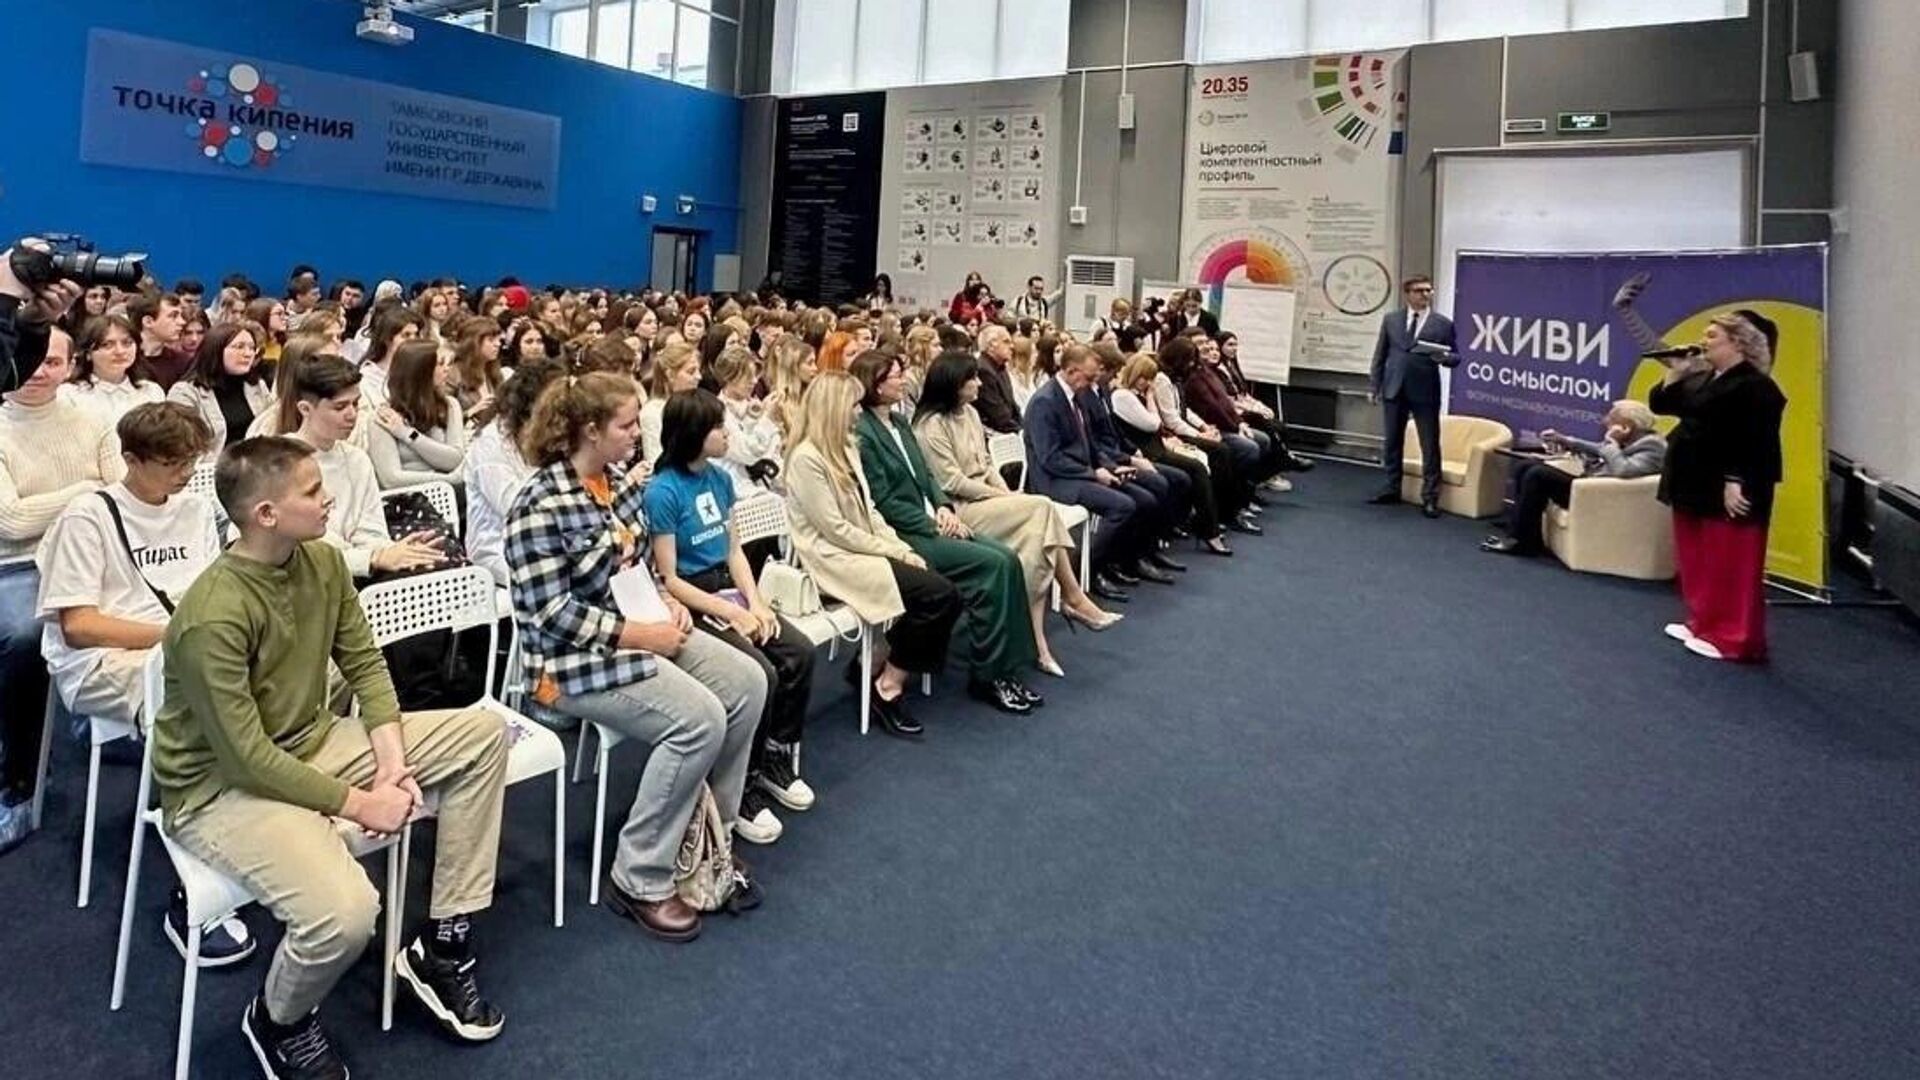 Брянские медиаволонтеры учились на всероссийском форуме «жить со смыслом»